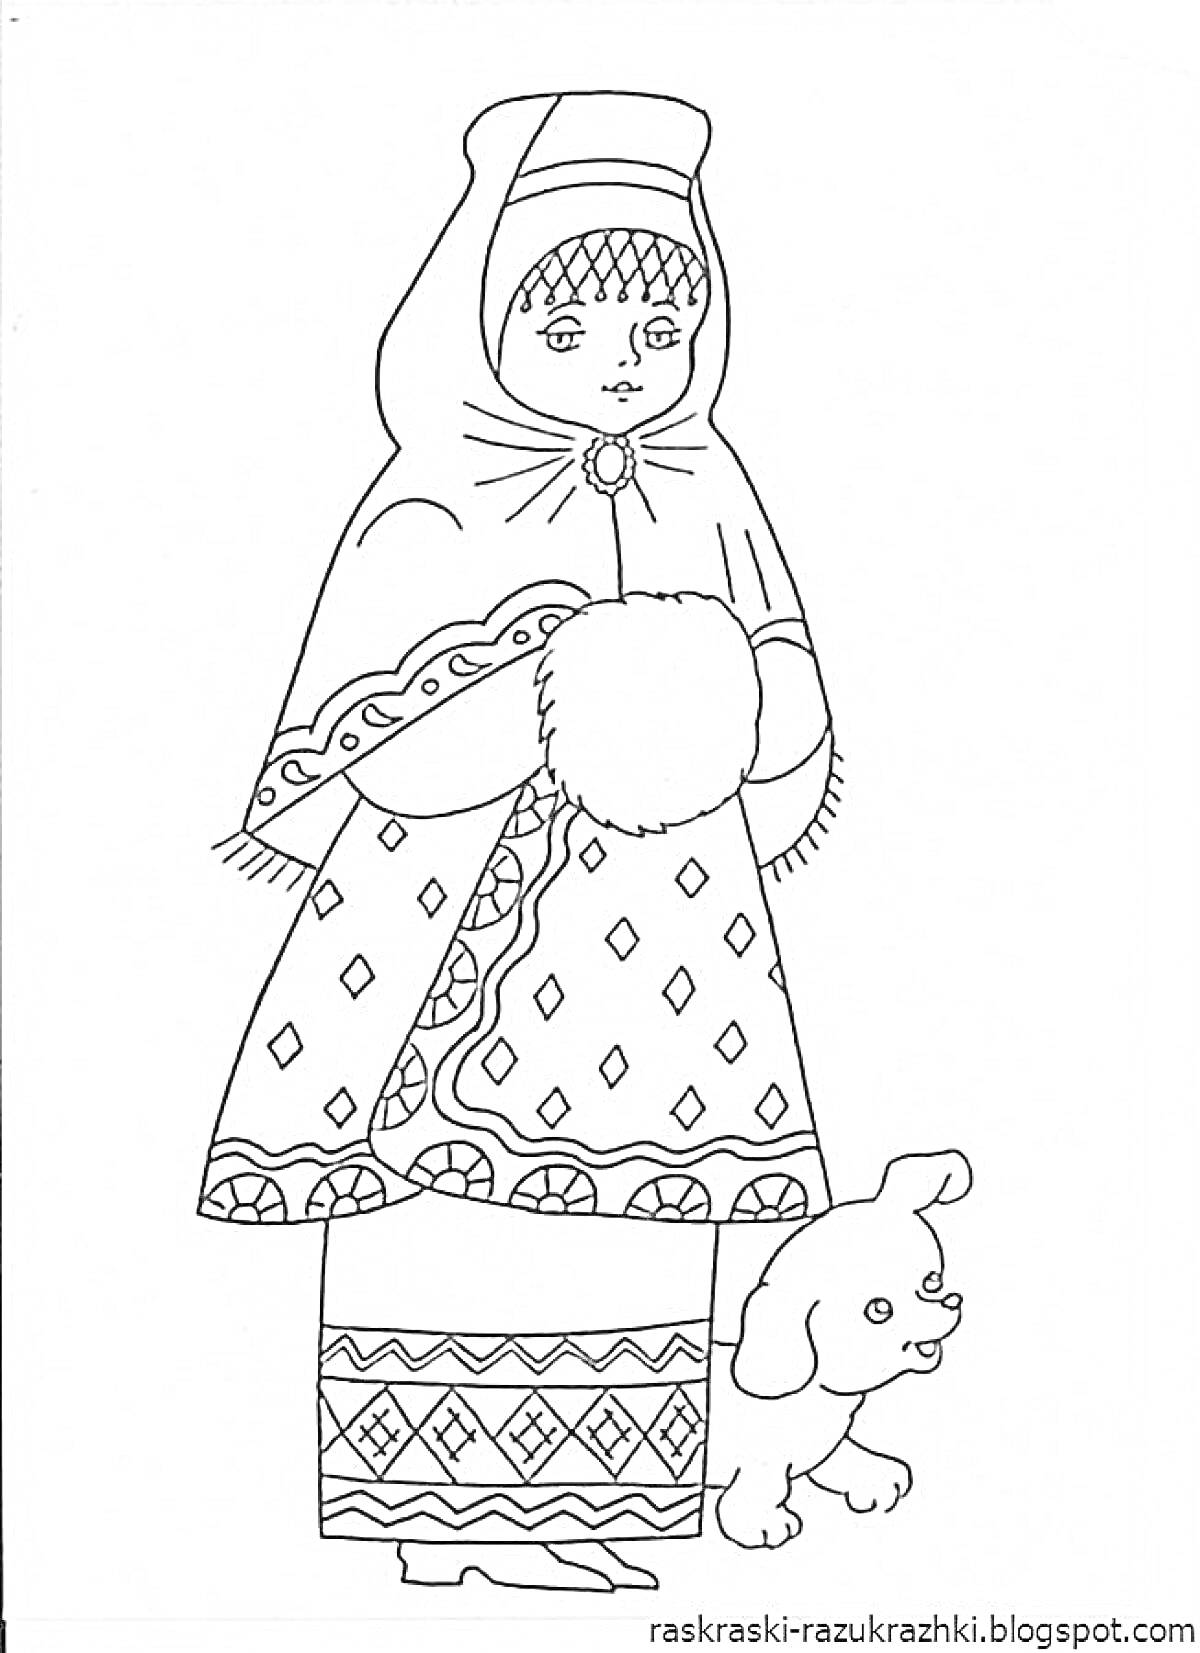 Девочка в русском народном костюме с платком на голове, сарафаном, рукавицами и собакой